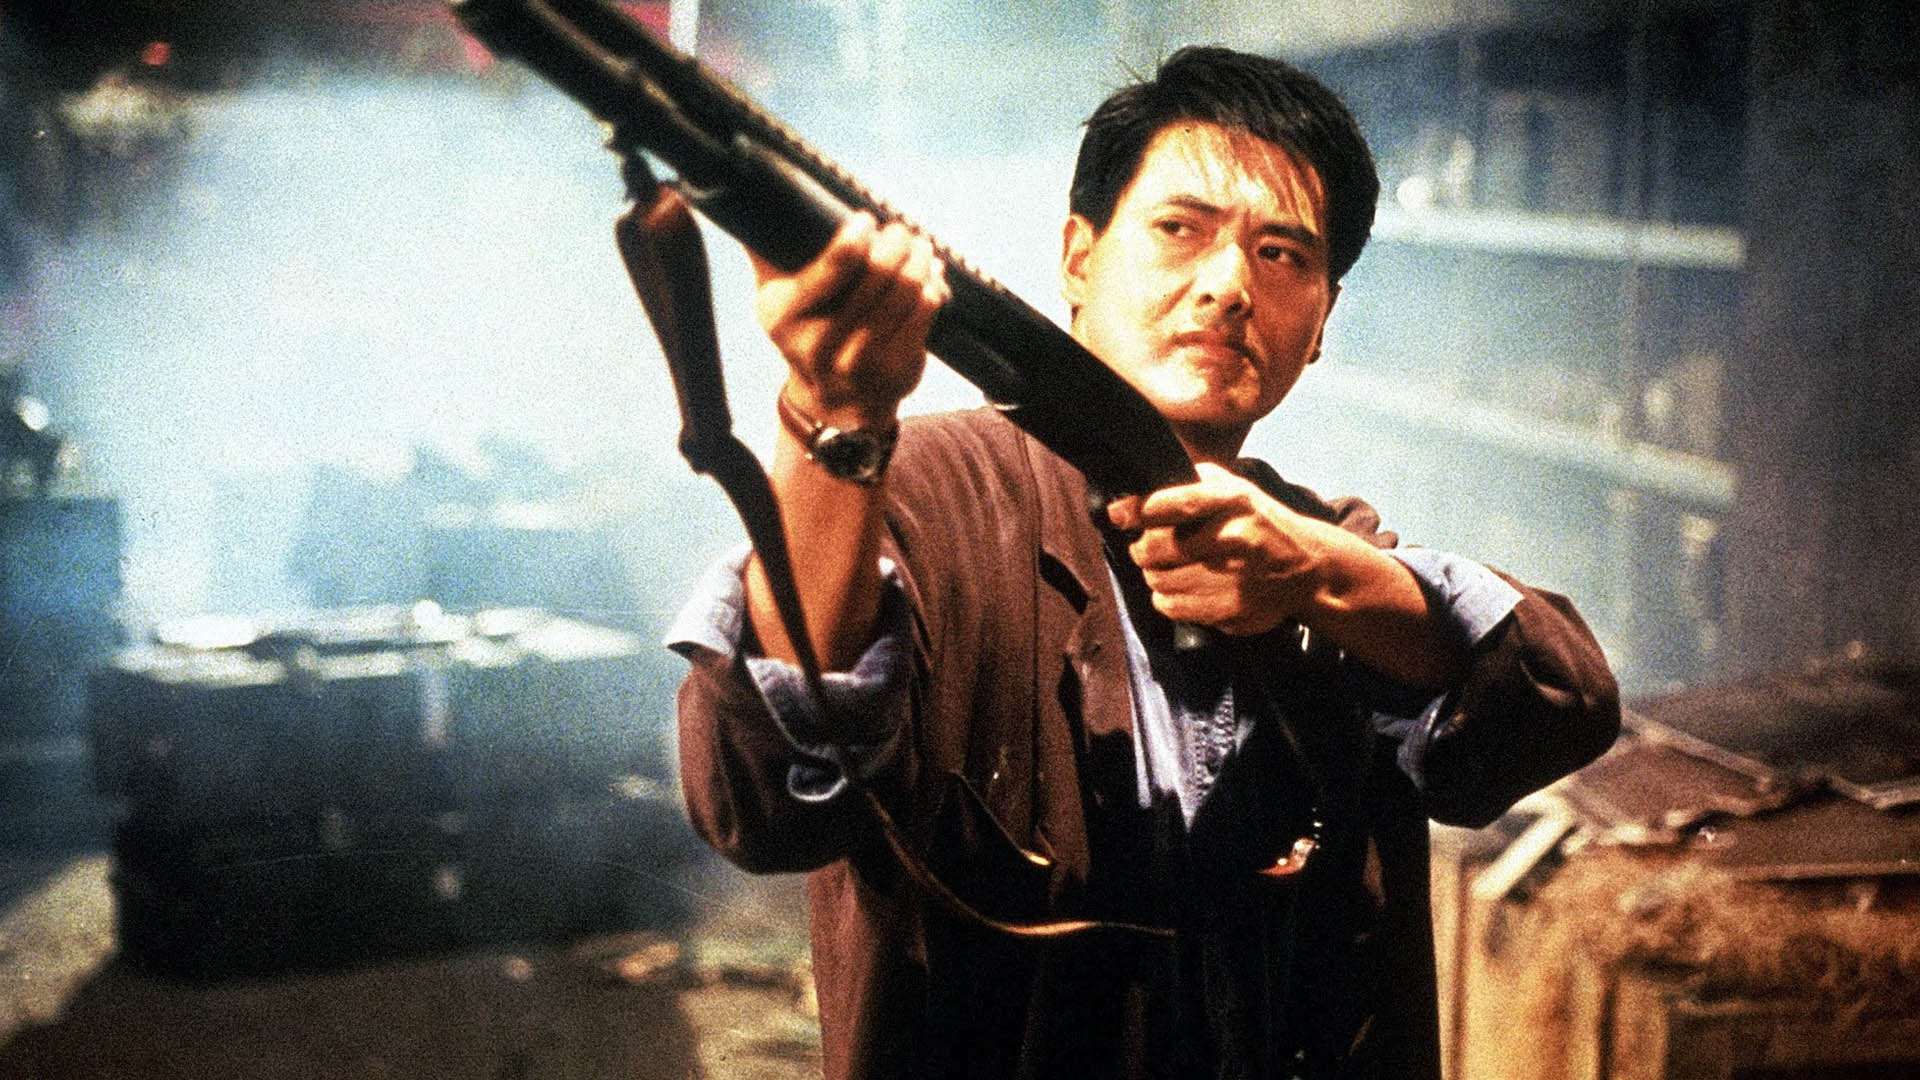 چو یون فات در فیلم Hard Boiled درحال شلیک با اسلحه